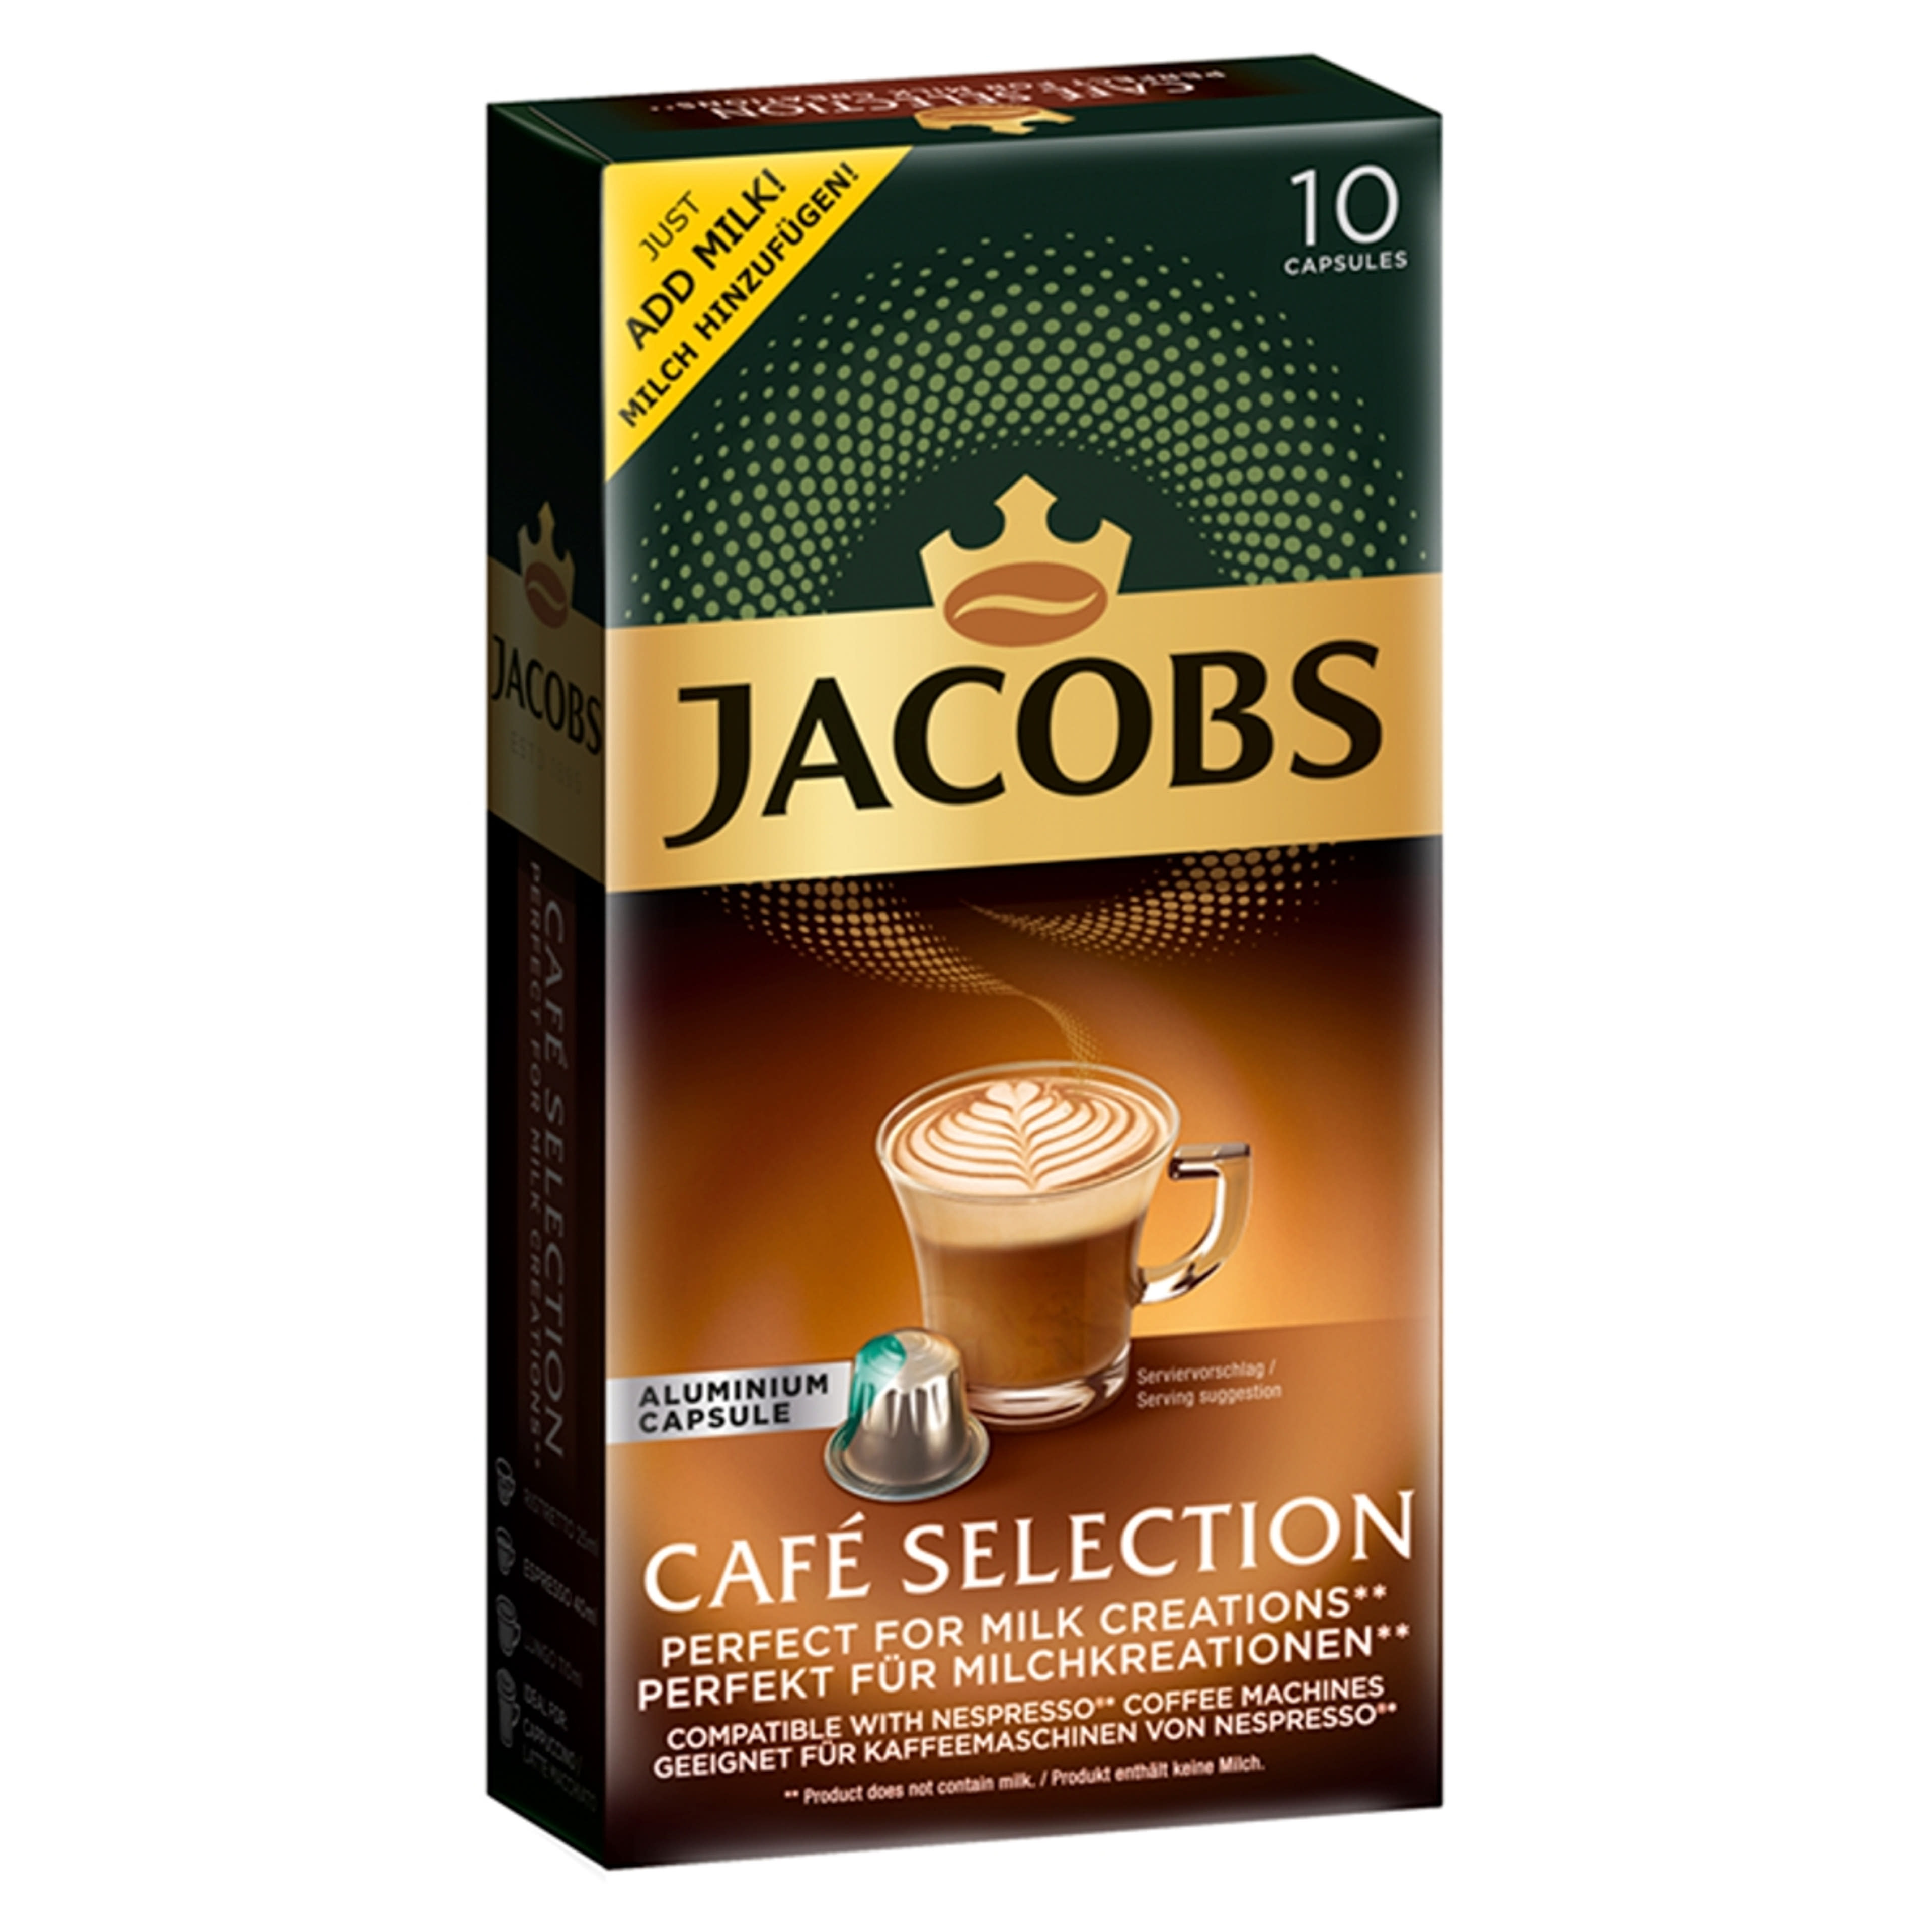 Jacobs Café Selection őrölt-pörkölt kávé kapszulában - 10 db 52 g-2